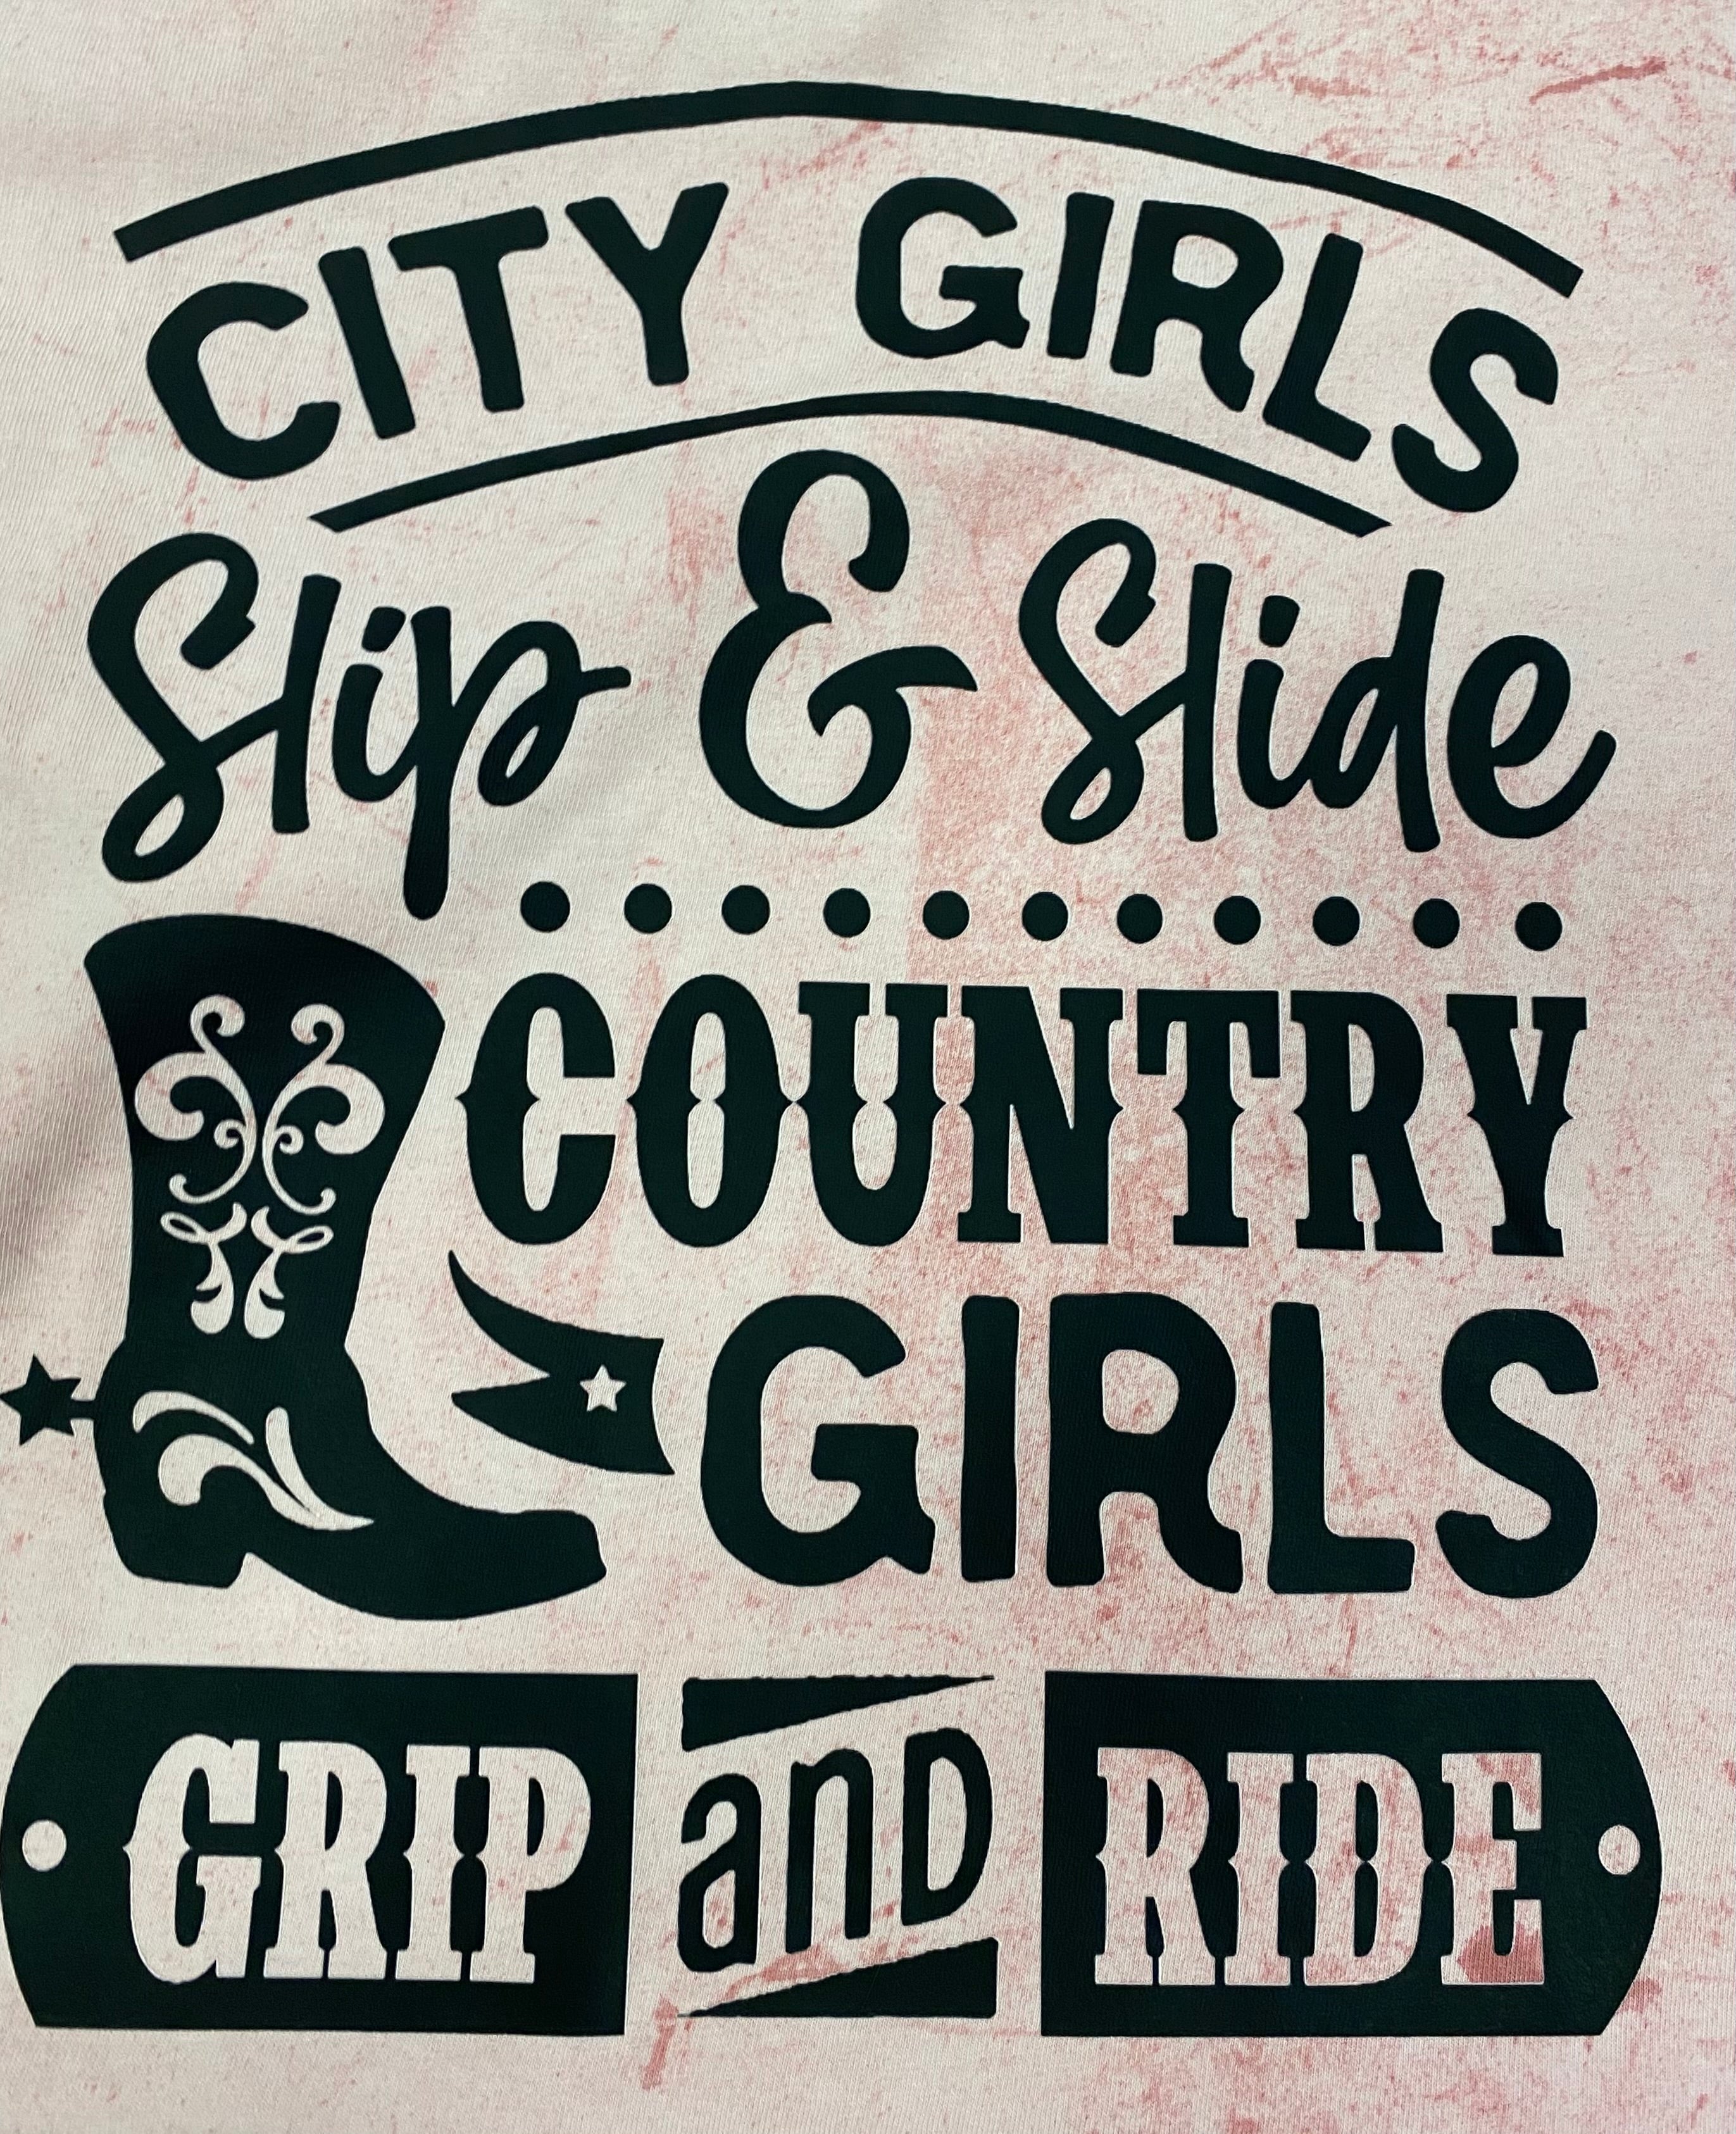 City girls slip & slide